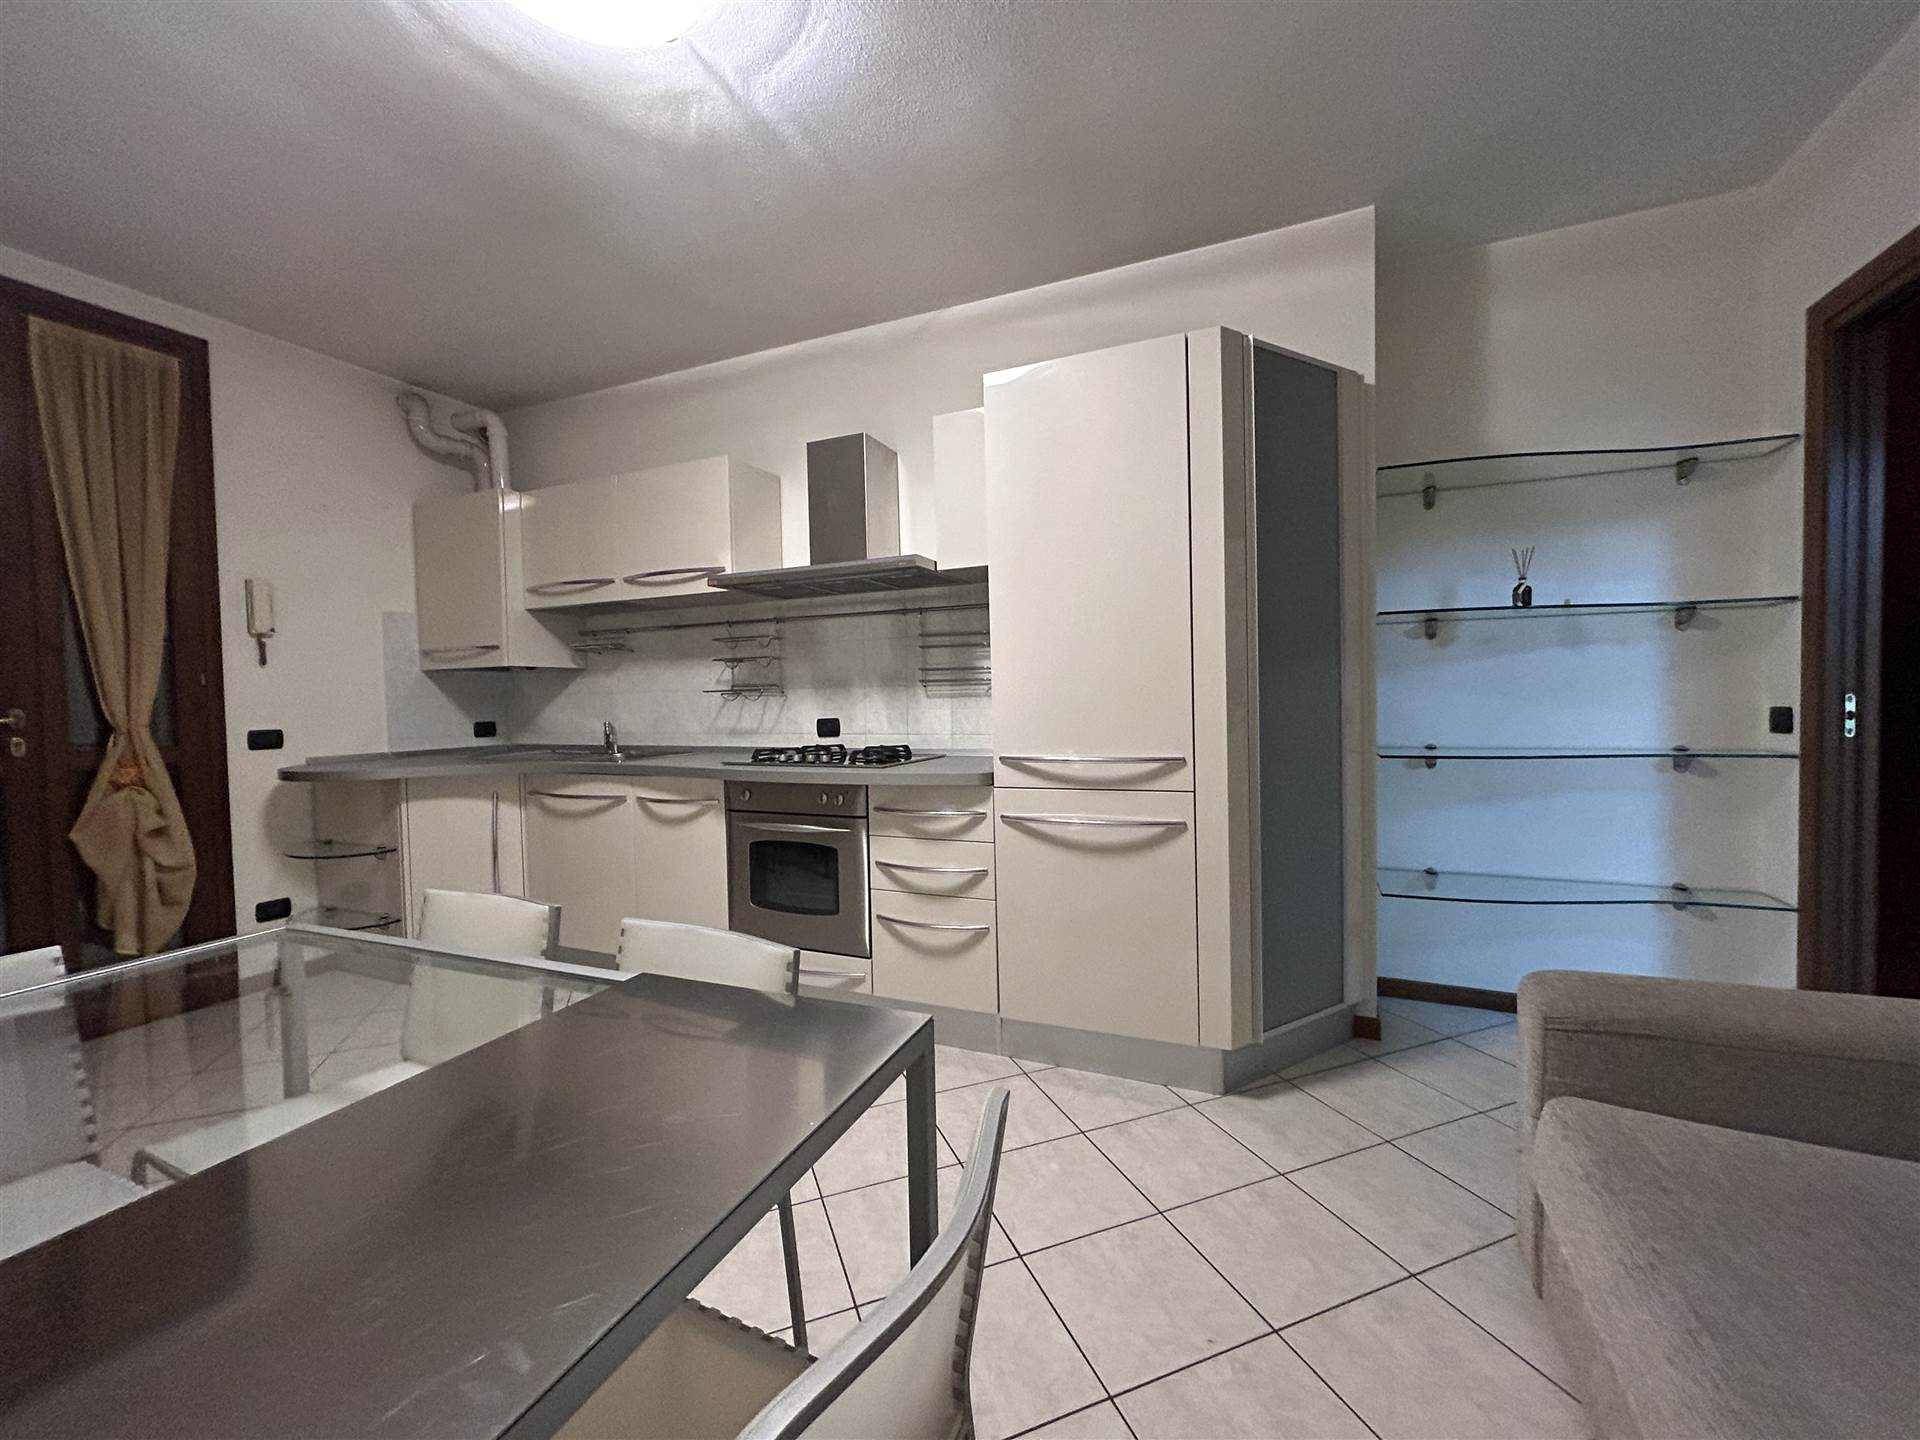 Appartamento in vendita a Rottofreno, 2 locali, zona Nicolò, prezzo € 120.000 | PortaleAgenzieImmobiliari.it